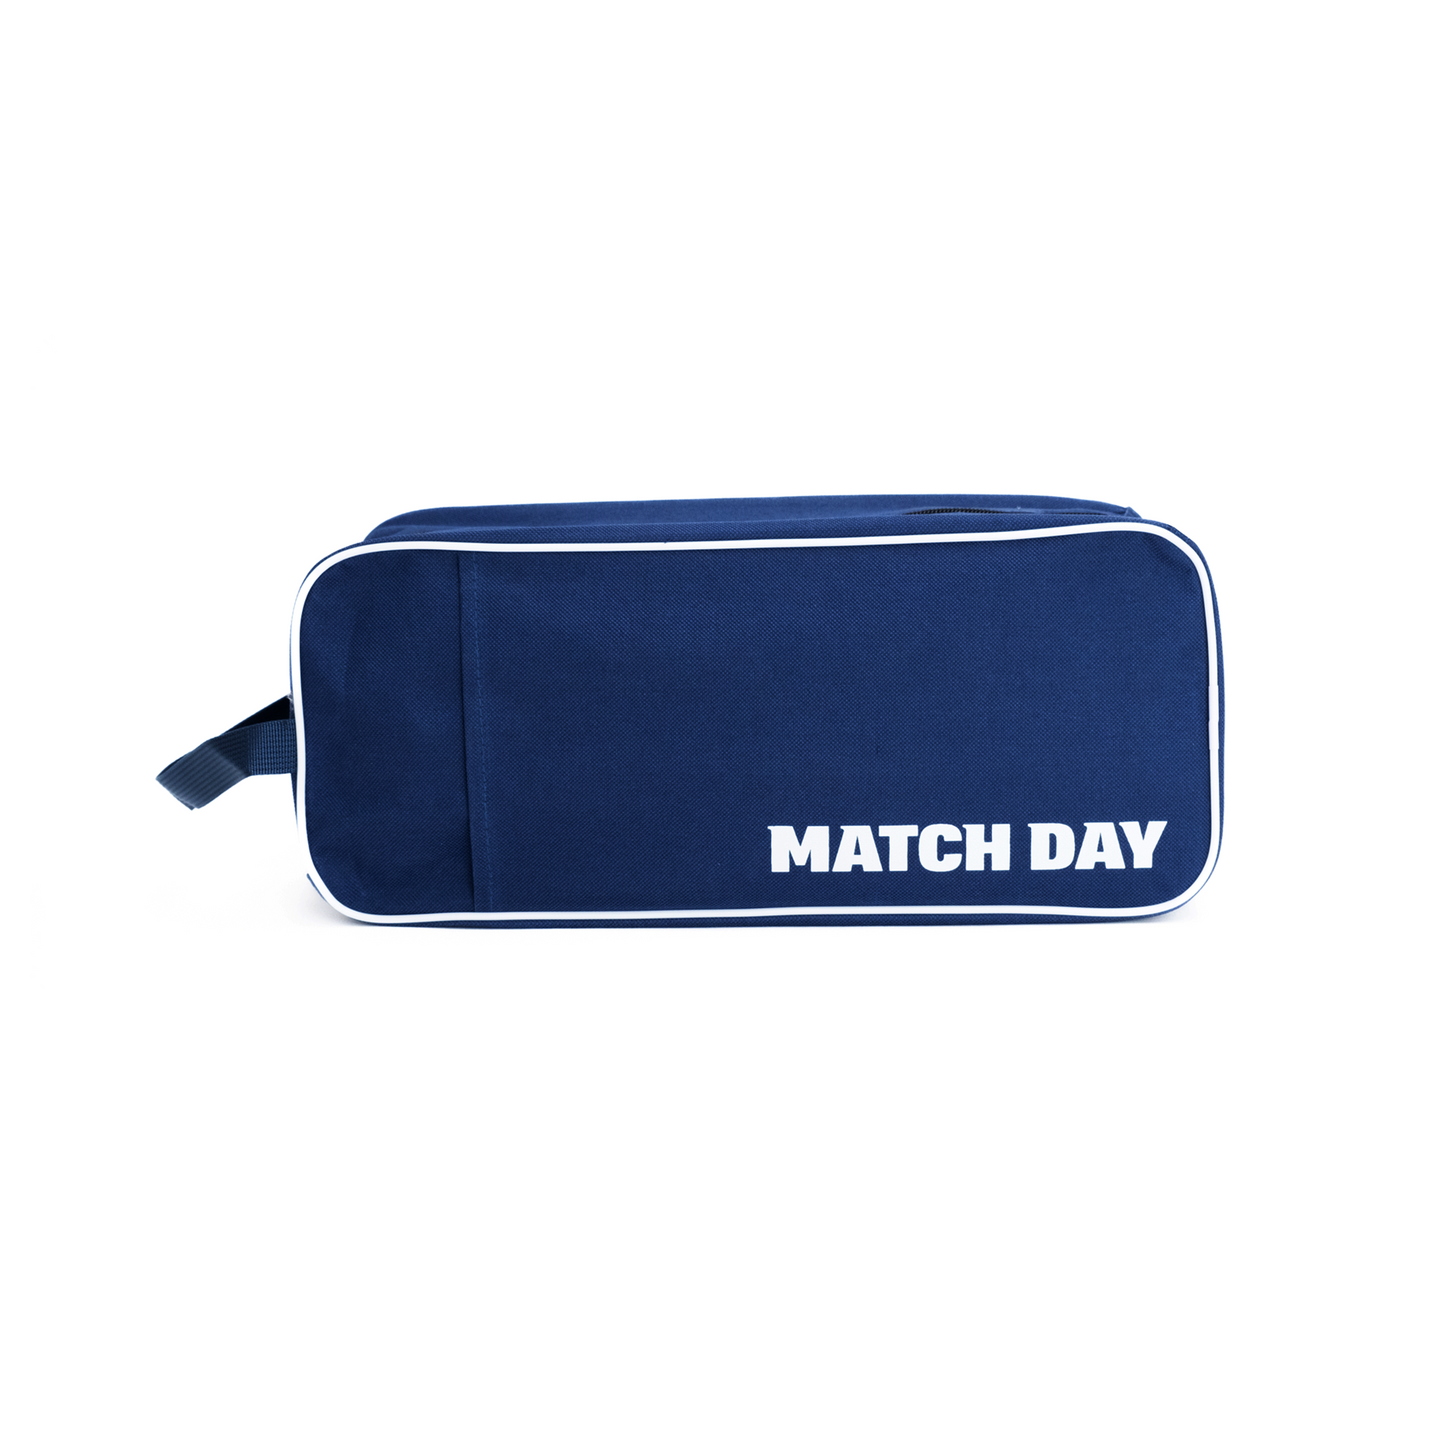 All Blacks Match Day Kit Bag - Navy